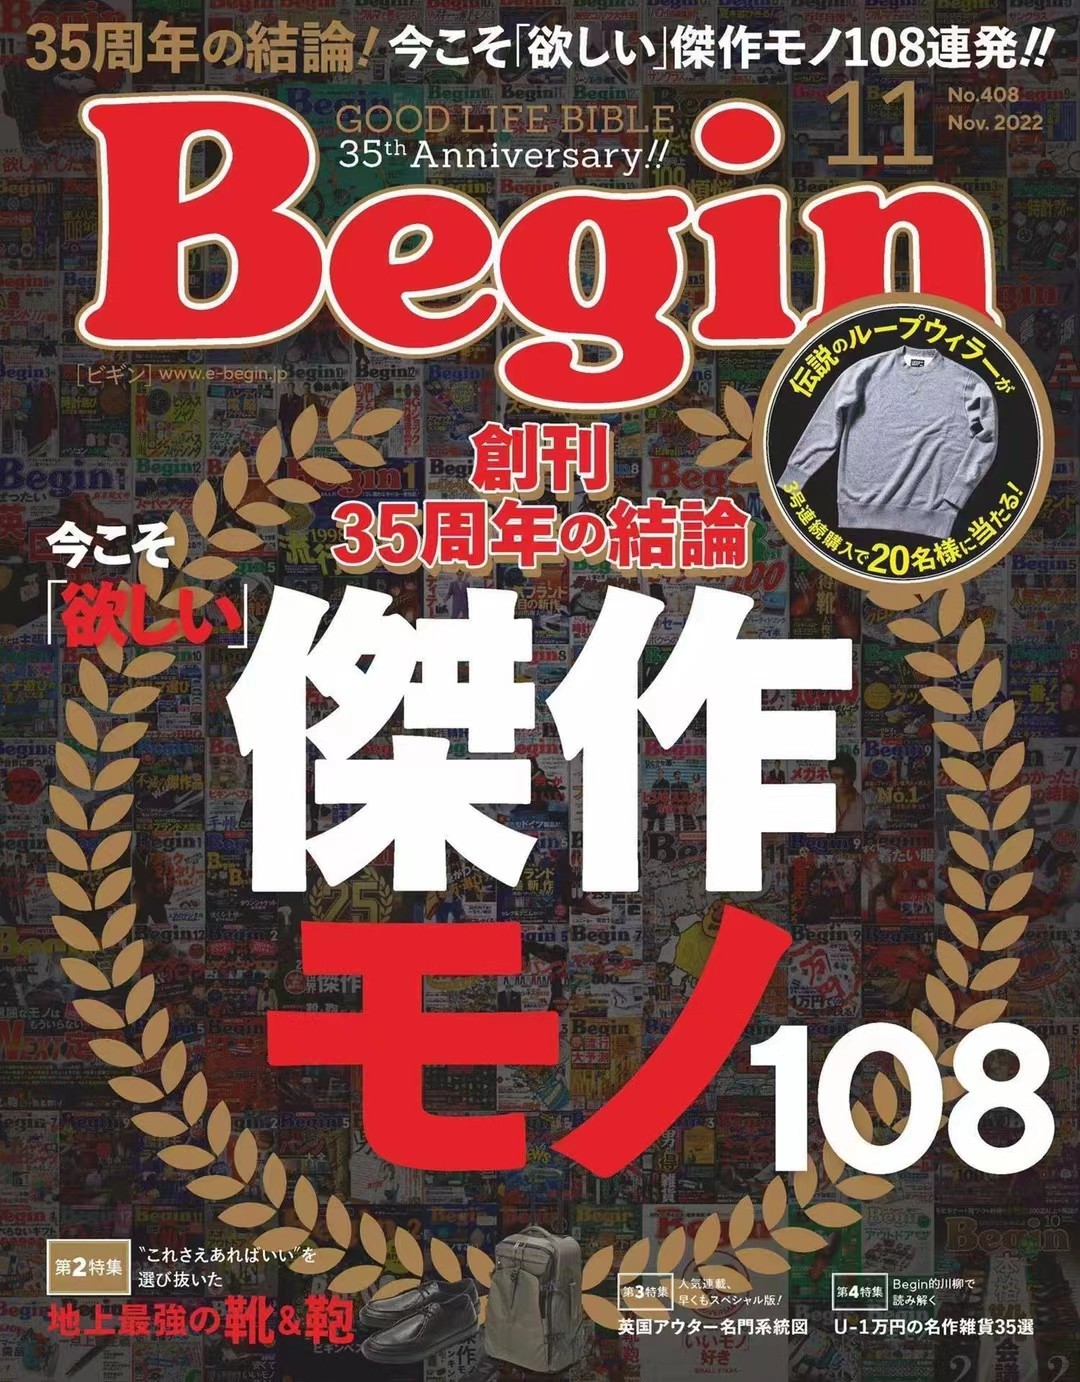 【瑜伽健身上新】 【日本】 009 [日本版]Begin 男性时尚杂志 2022年11月刊 电子版